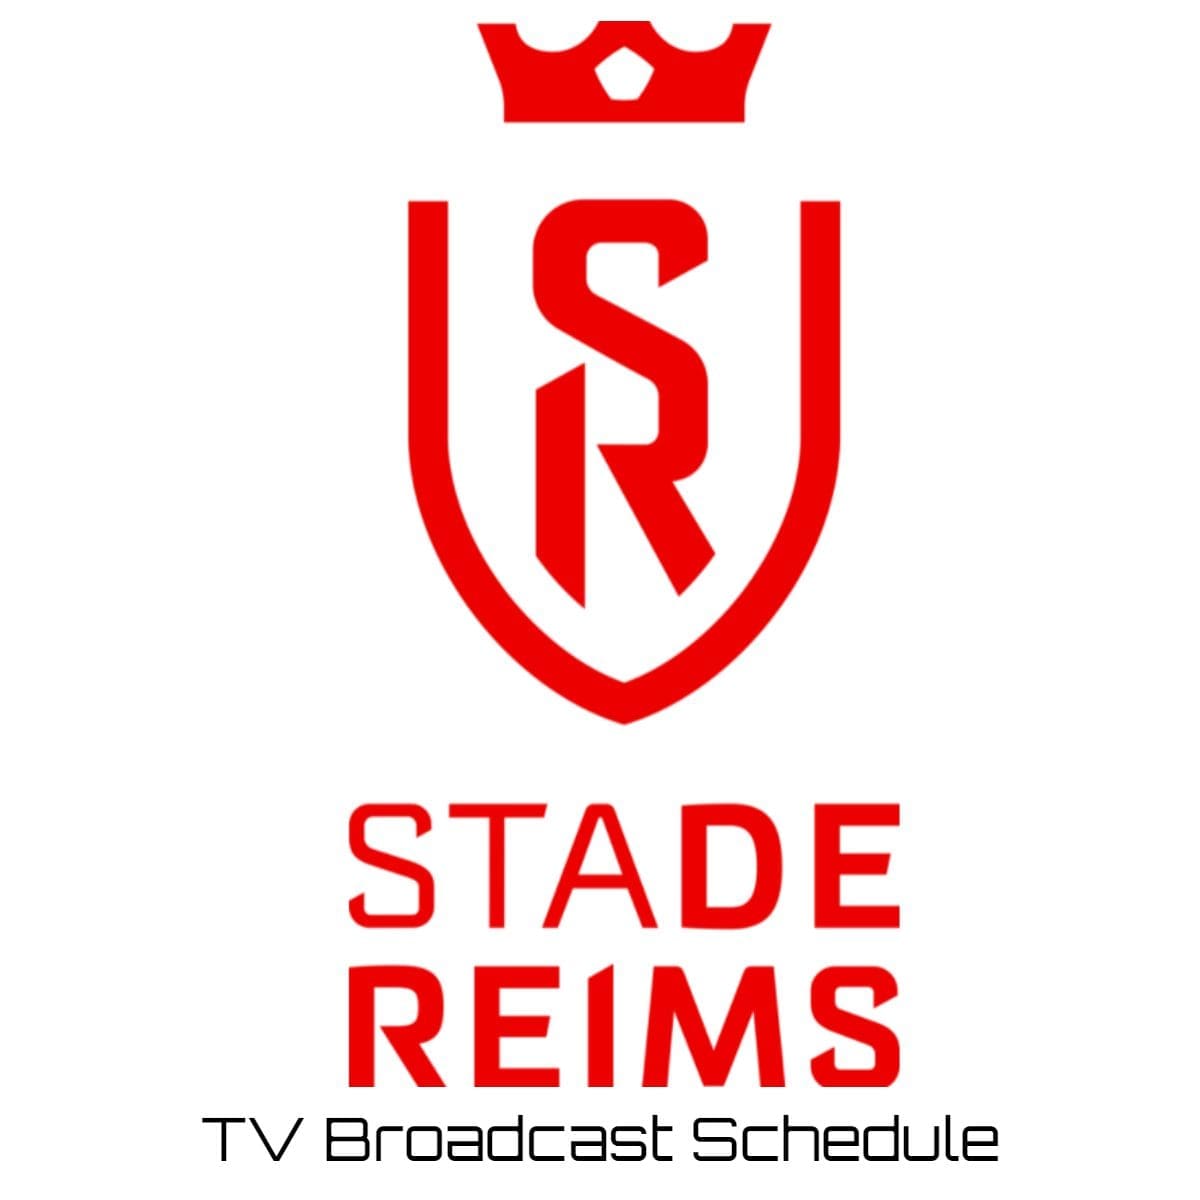 Reims TV Broadcast Schedule